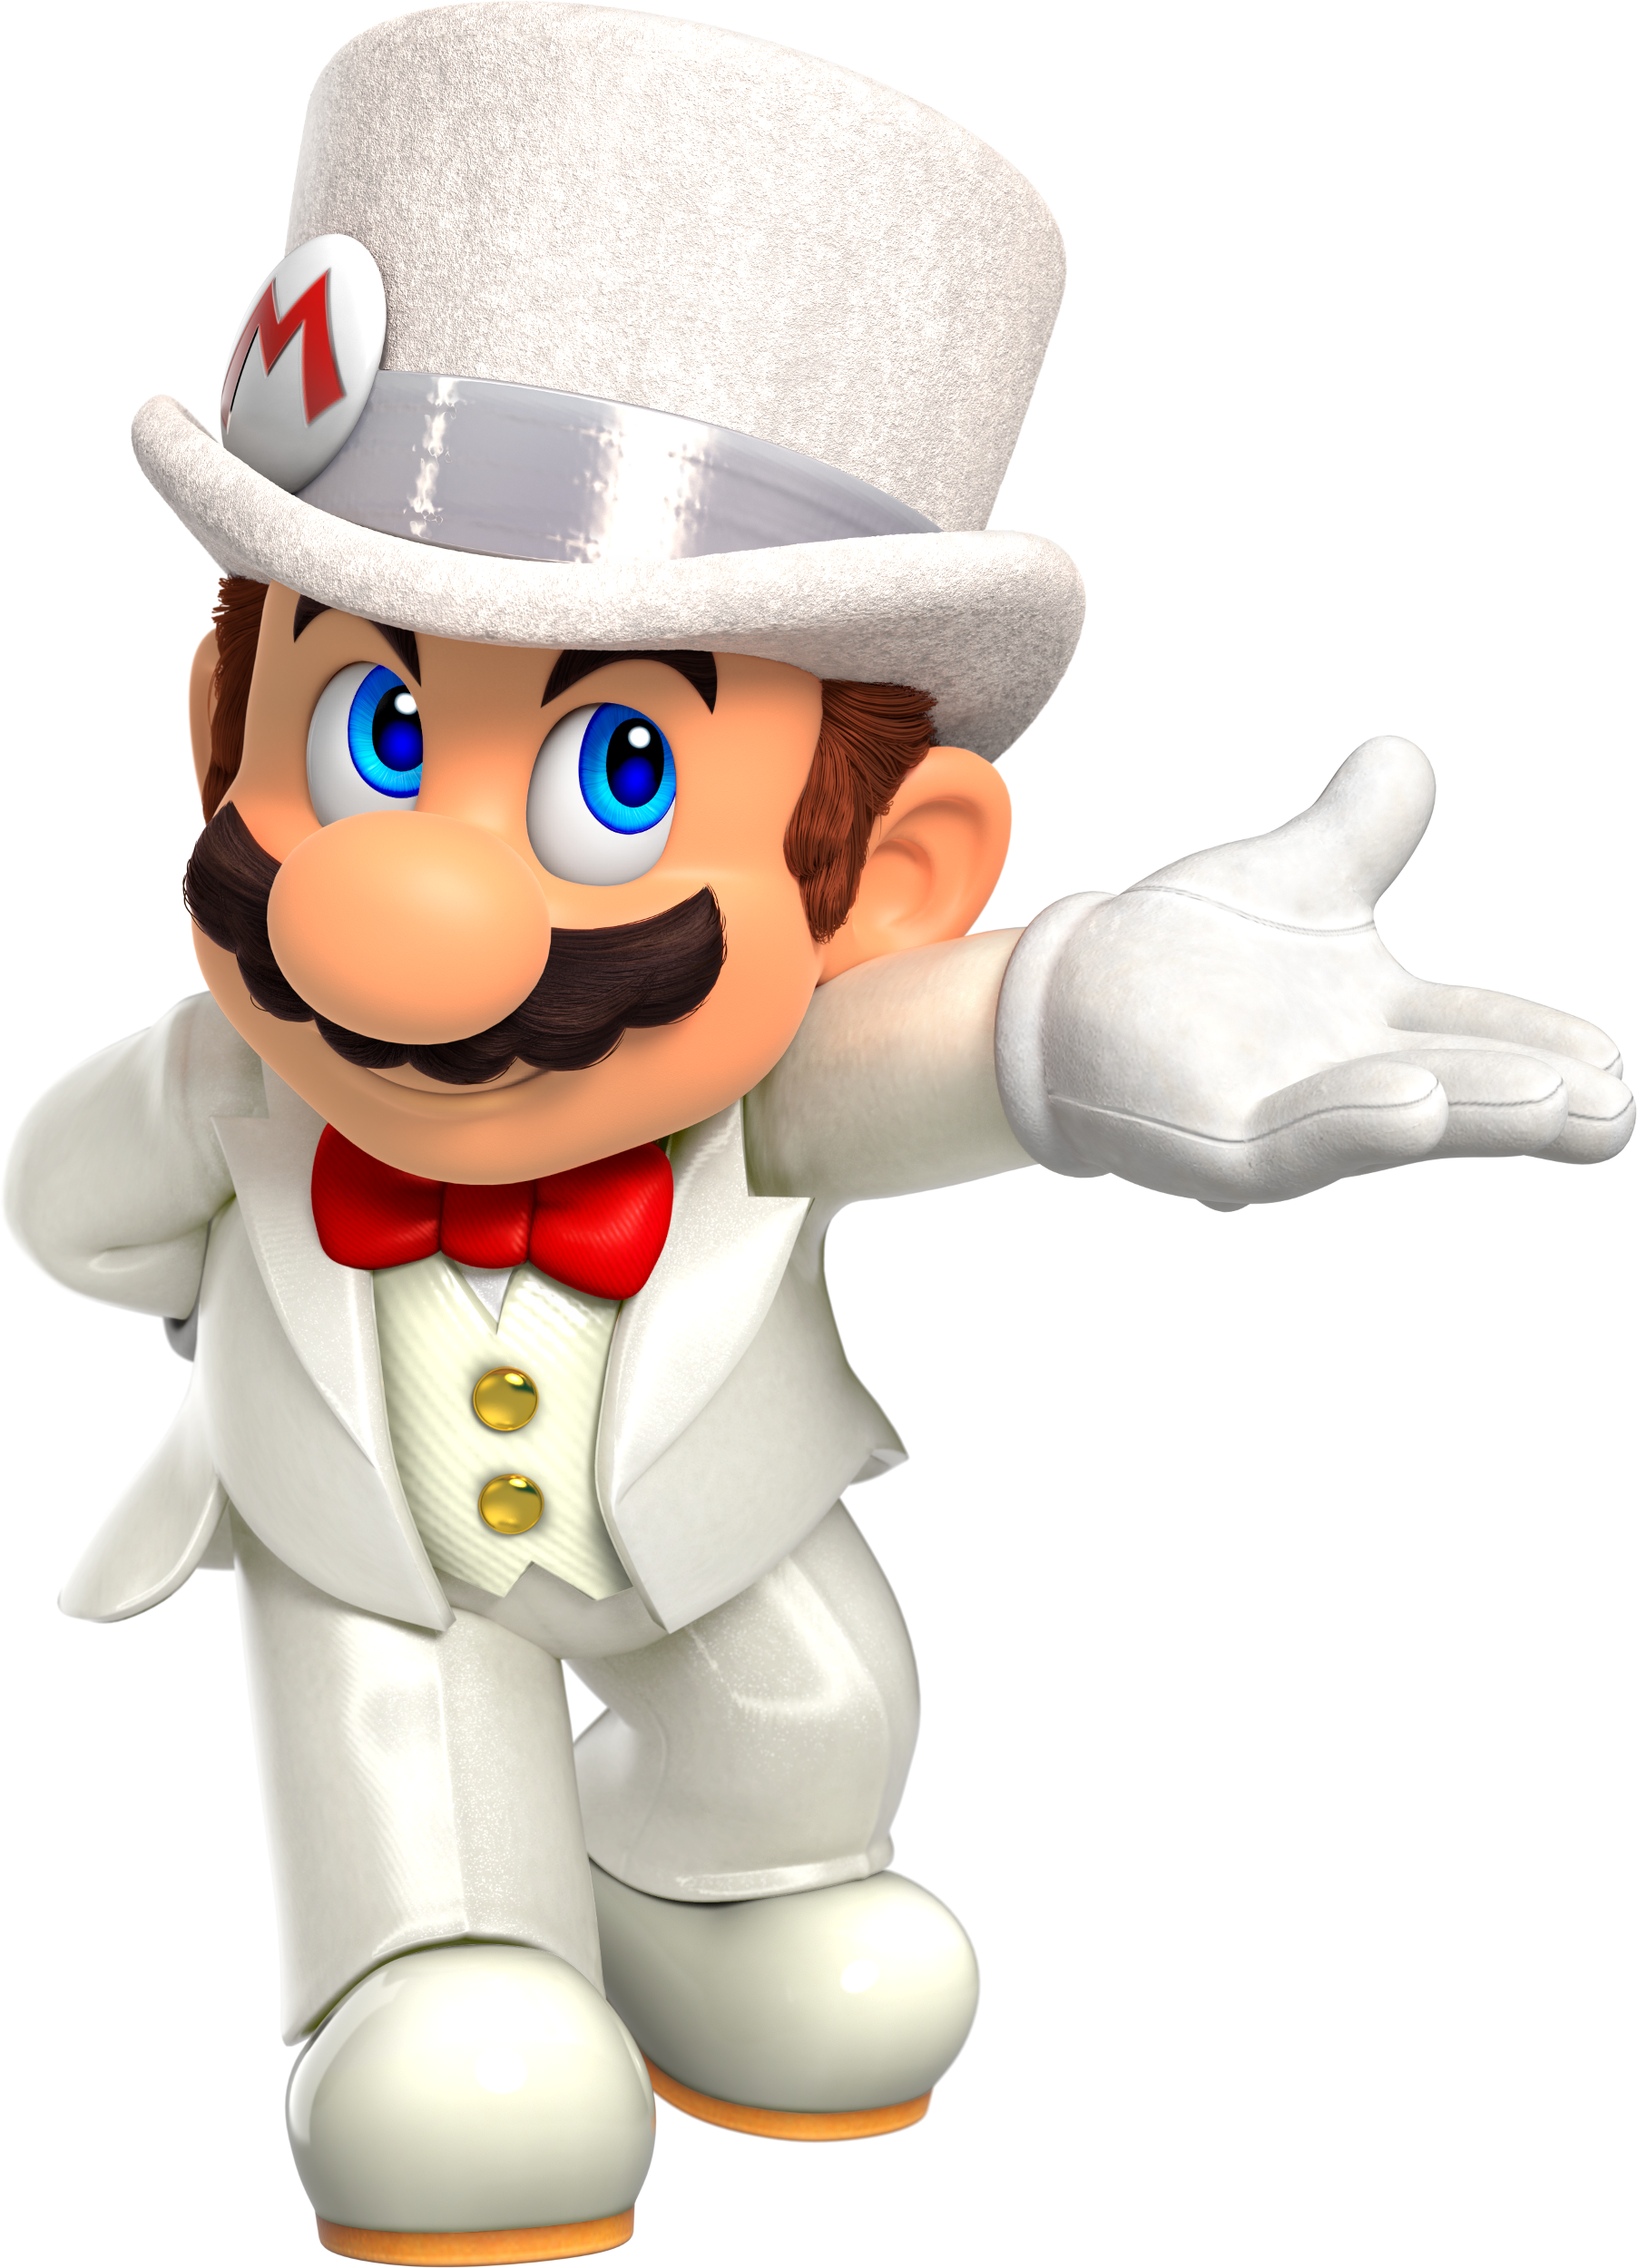 Super Mario Odyssey Super Mario Bros - Super Mario Odyssey Mario (1804x2500)